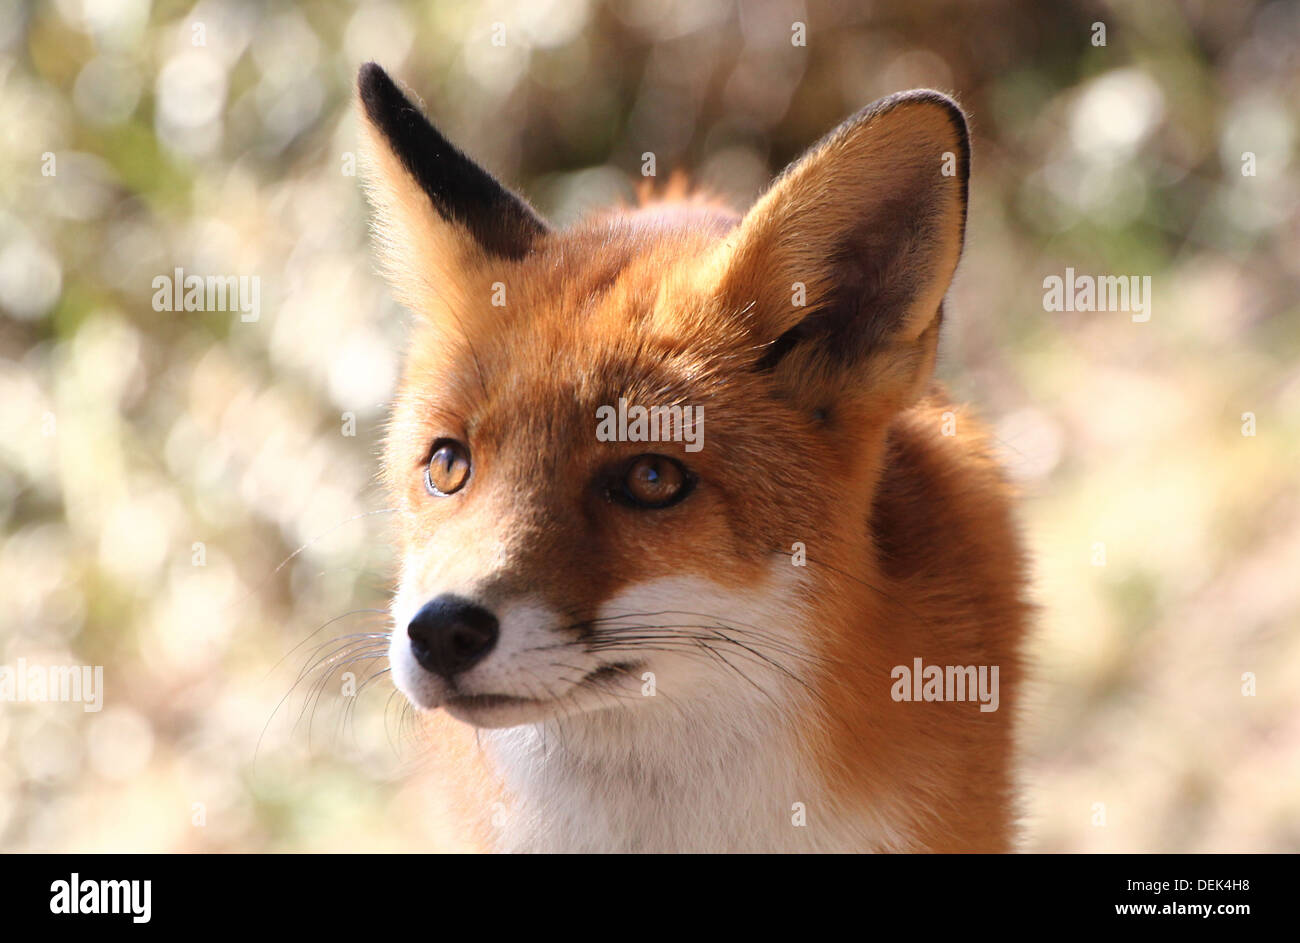 L'inquisitrice portrait red fox (Vulpes vulpes) Banque D'Images